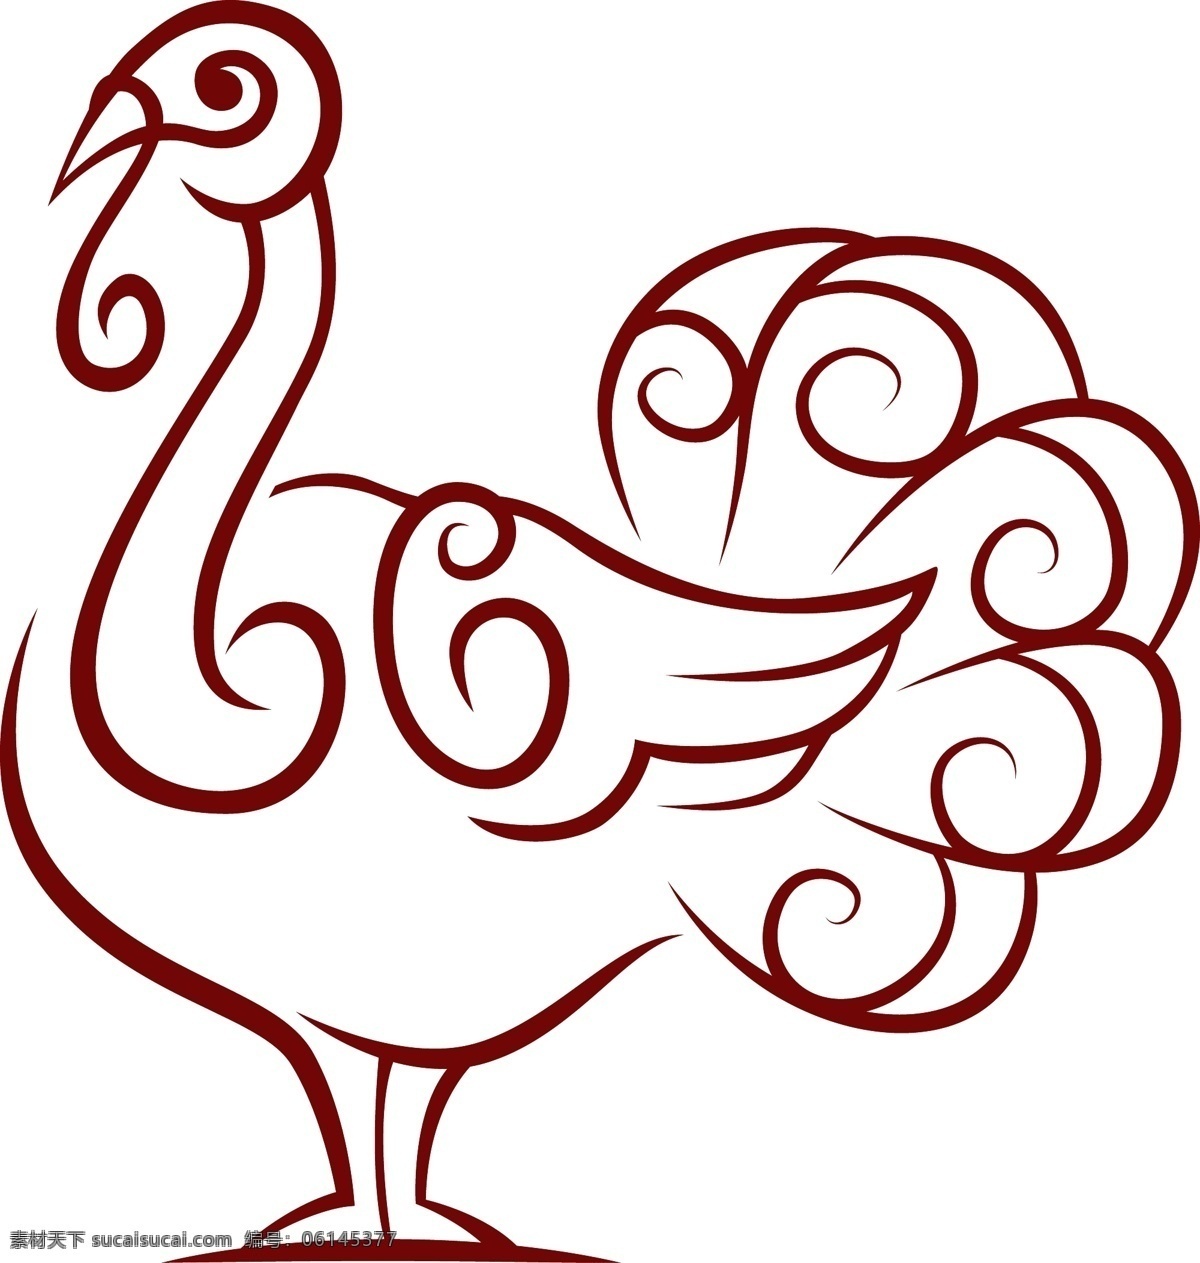 手绘火鸡矢量 复活节 节日 动物 矢量图 ai格式 白色